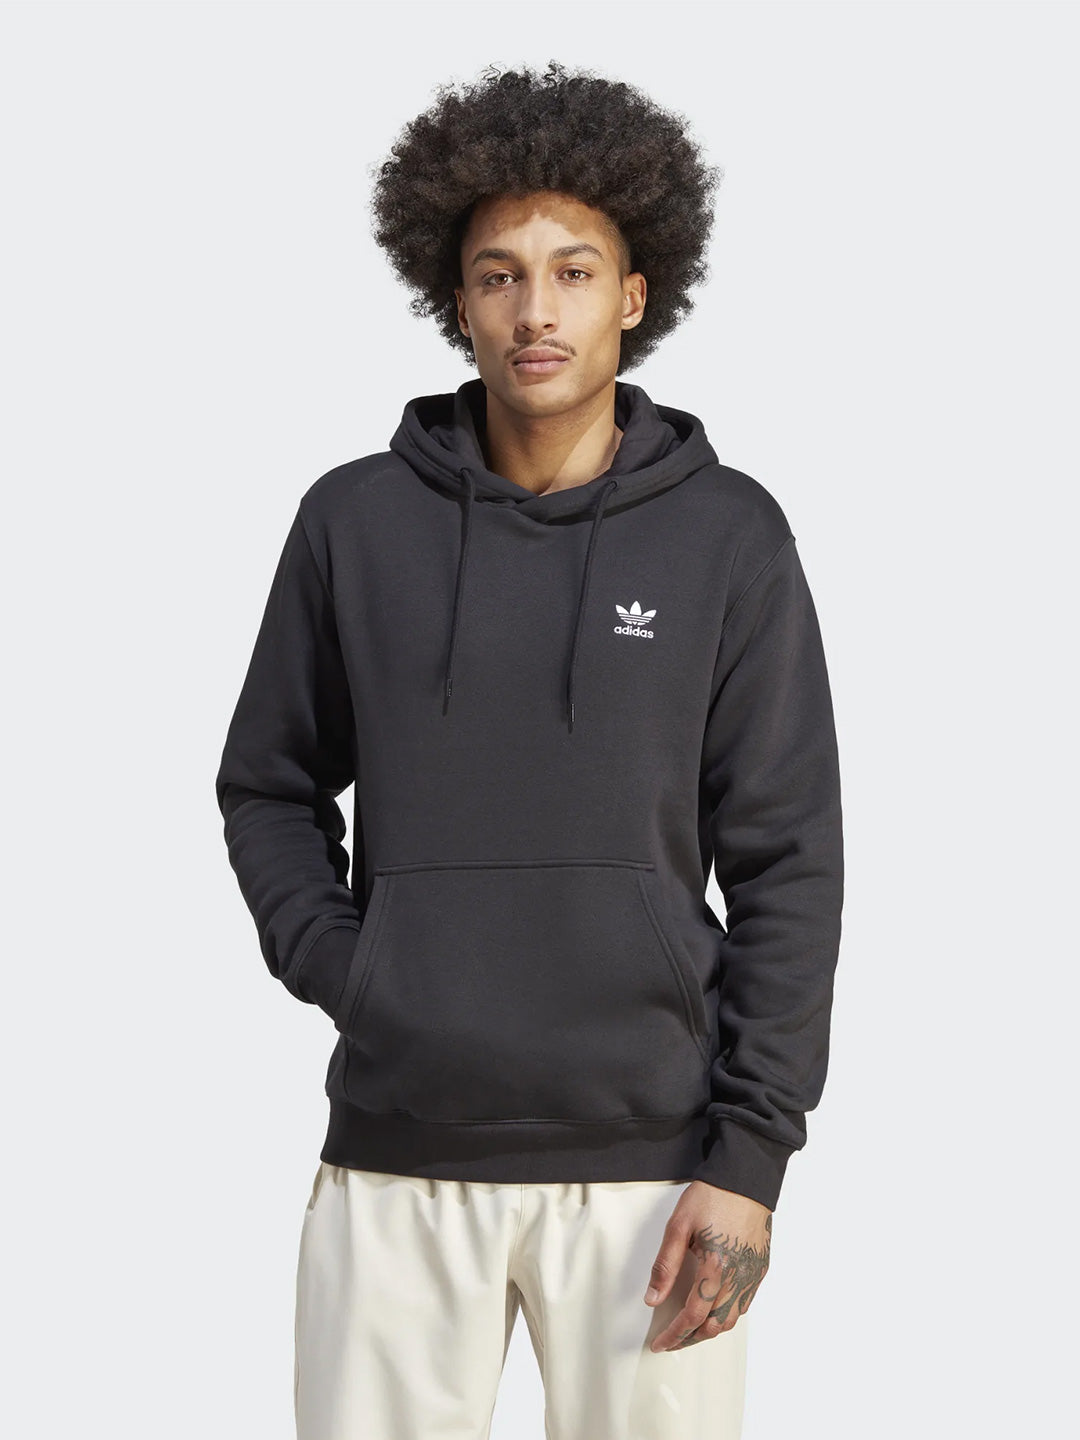 Adidas felpa nero con capuccio regolabile basic